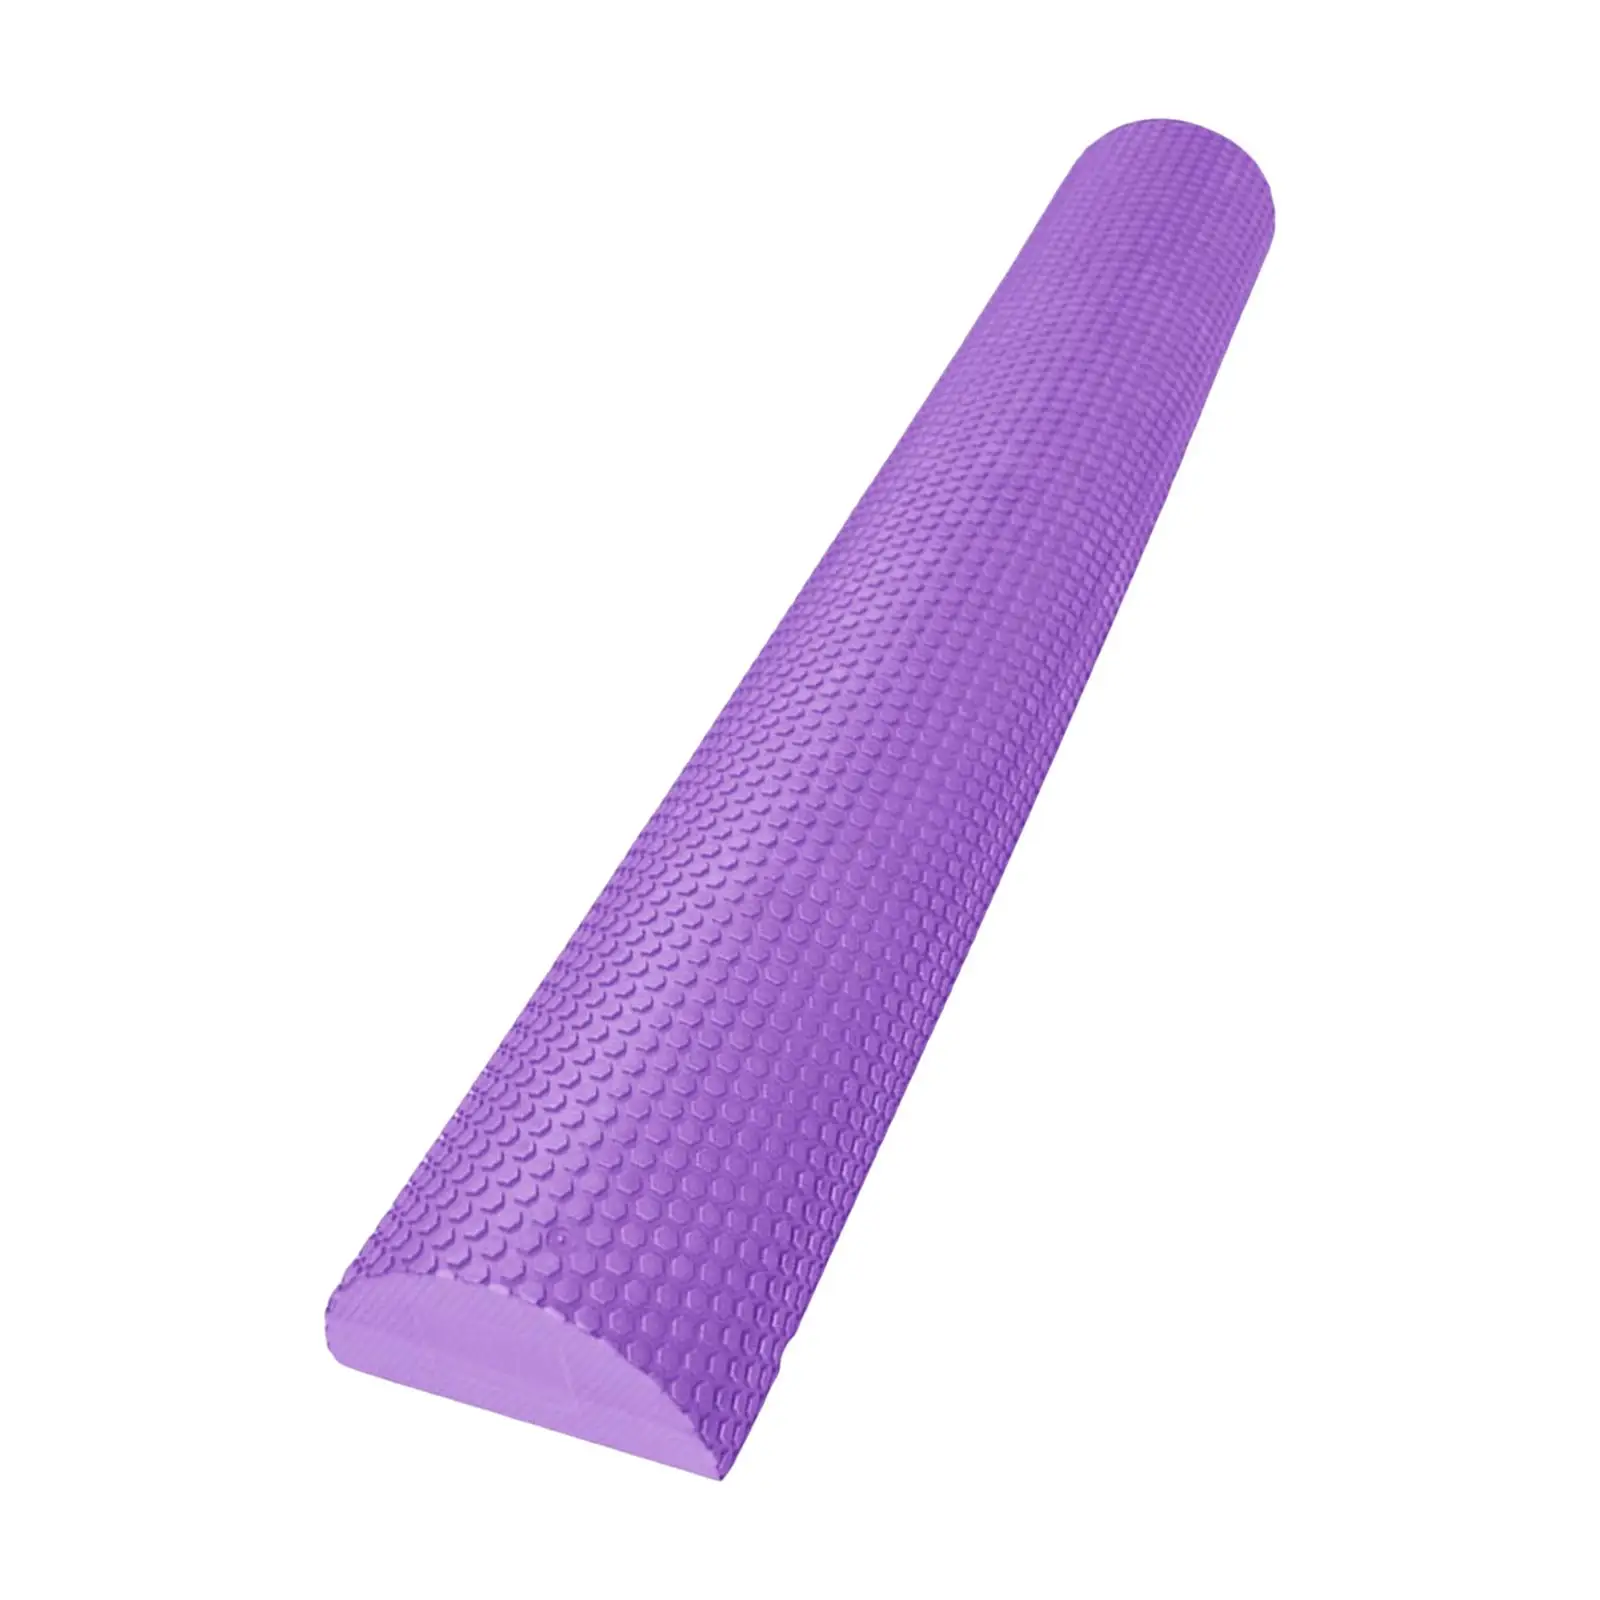 Lightweight Yoga Column Roller Foam Roller Muscle Massage Equipment Half Round